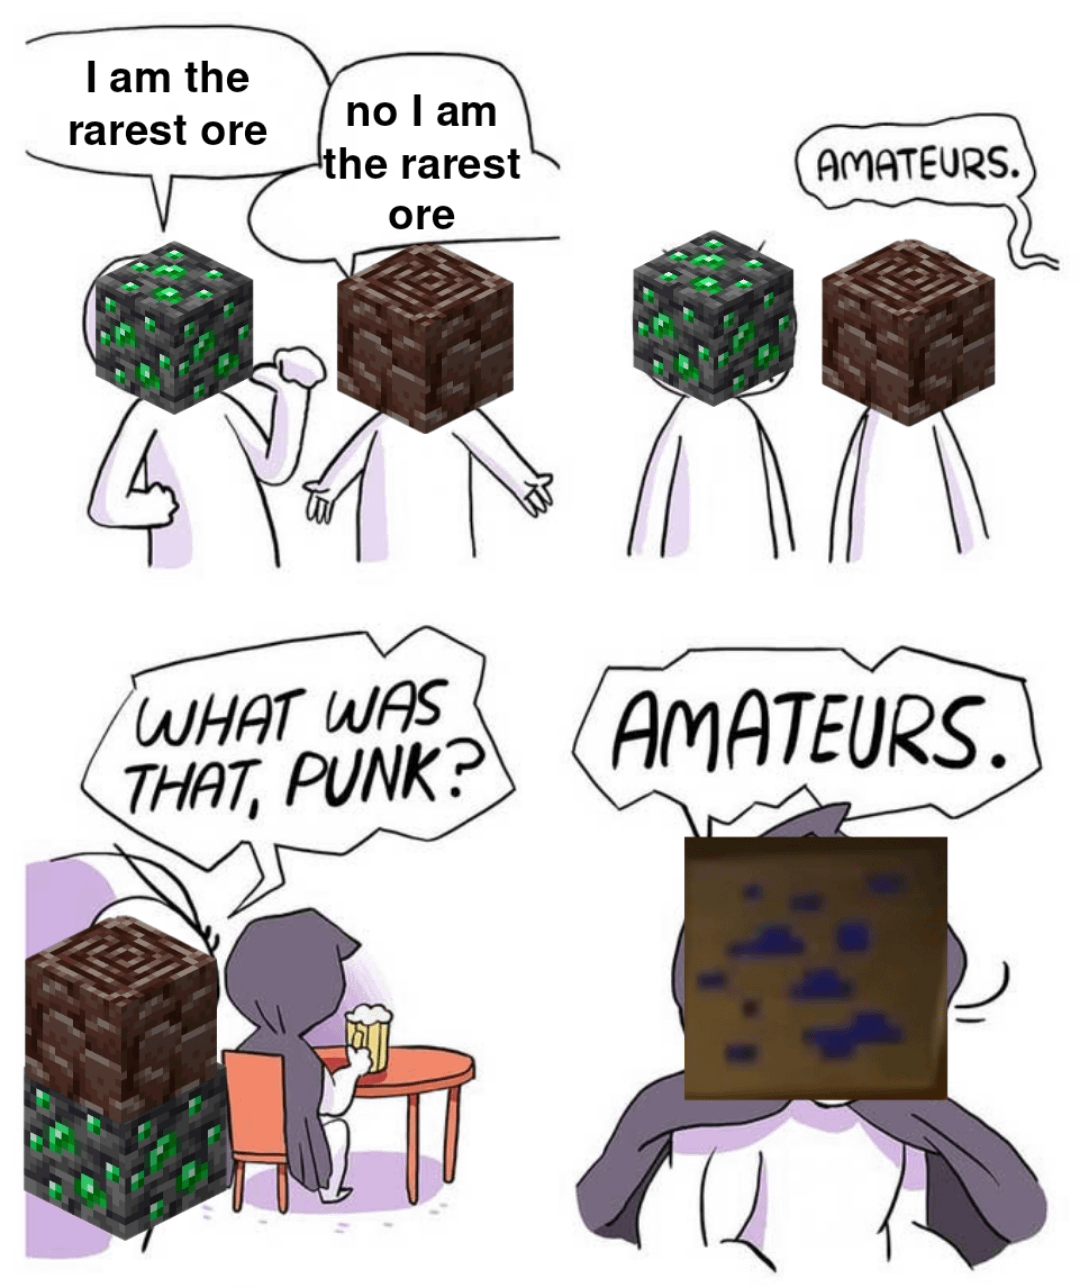 Minecraft Memes - "Ultra rare, unseen Minecraft find!"